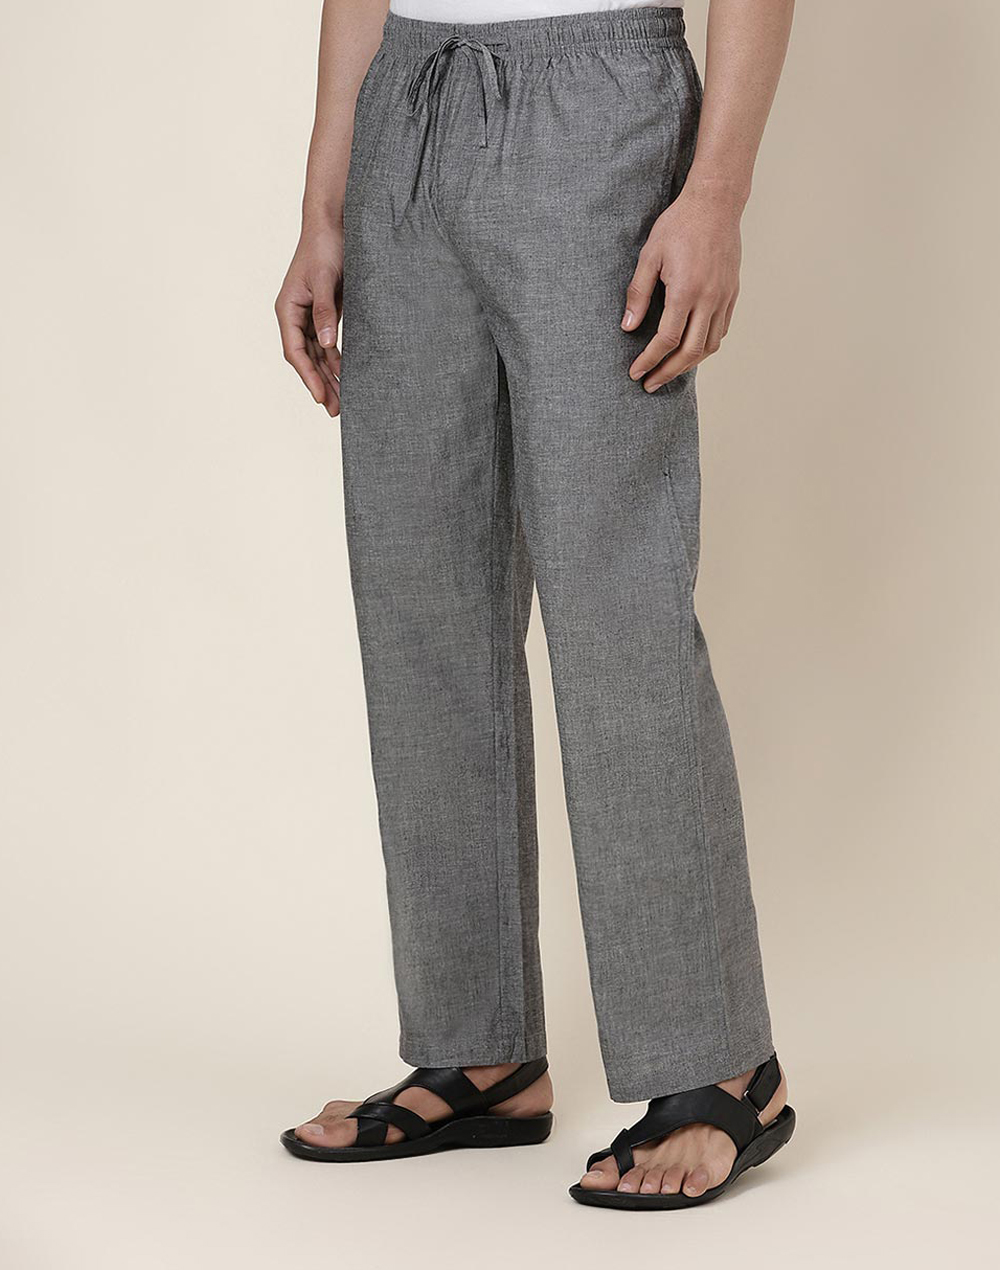 Buy Grey Cotton Drawstring Pants for Men Online at Fabindia | 20054557